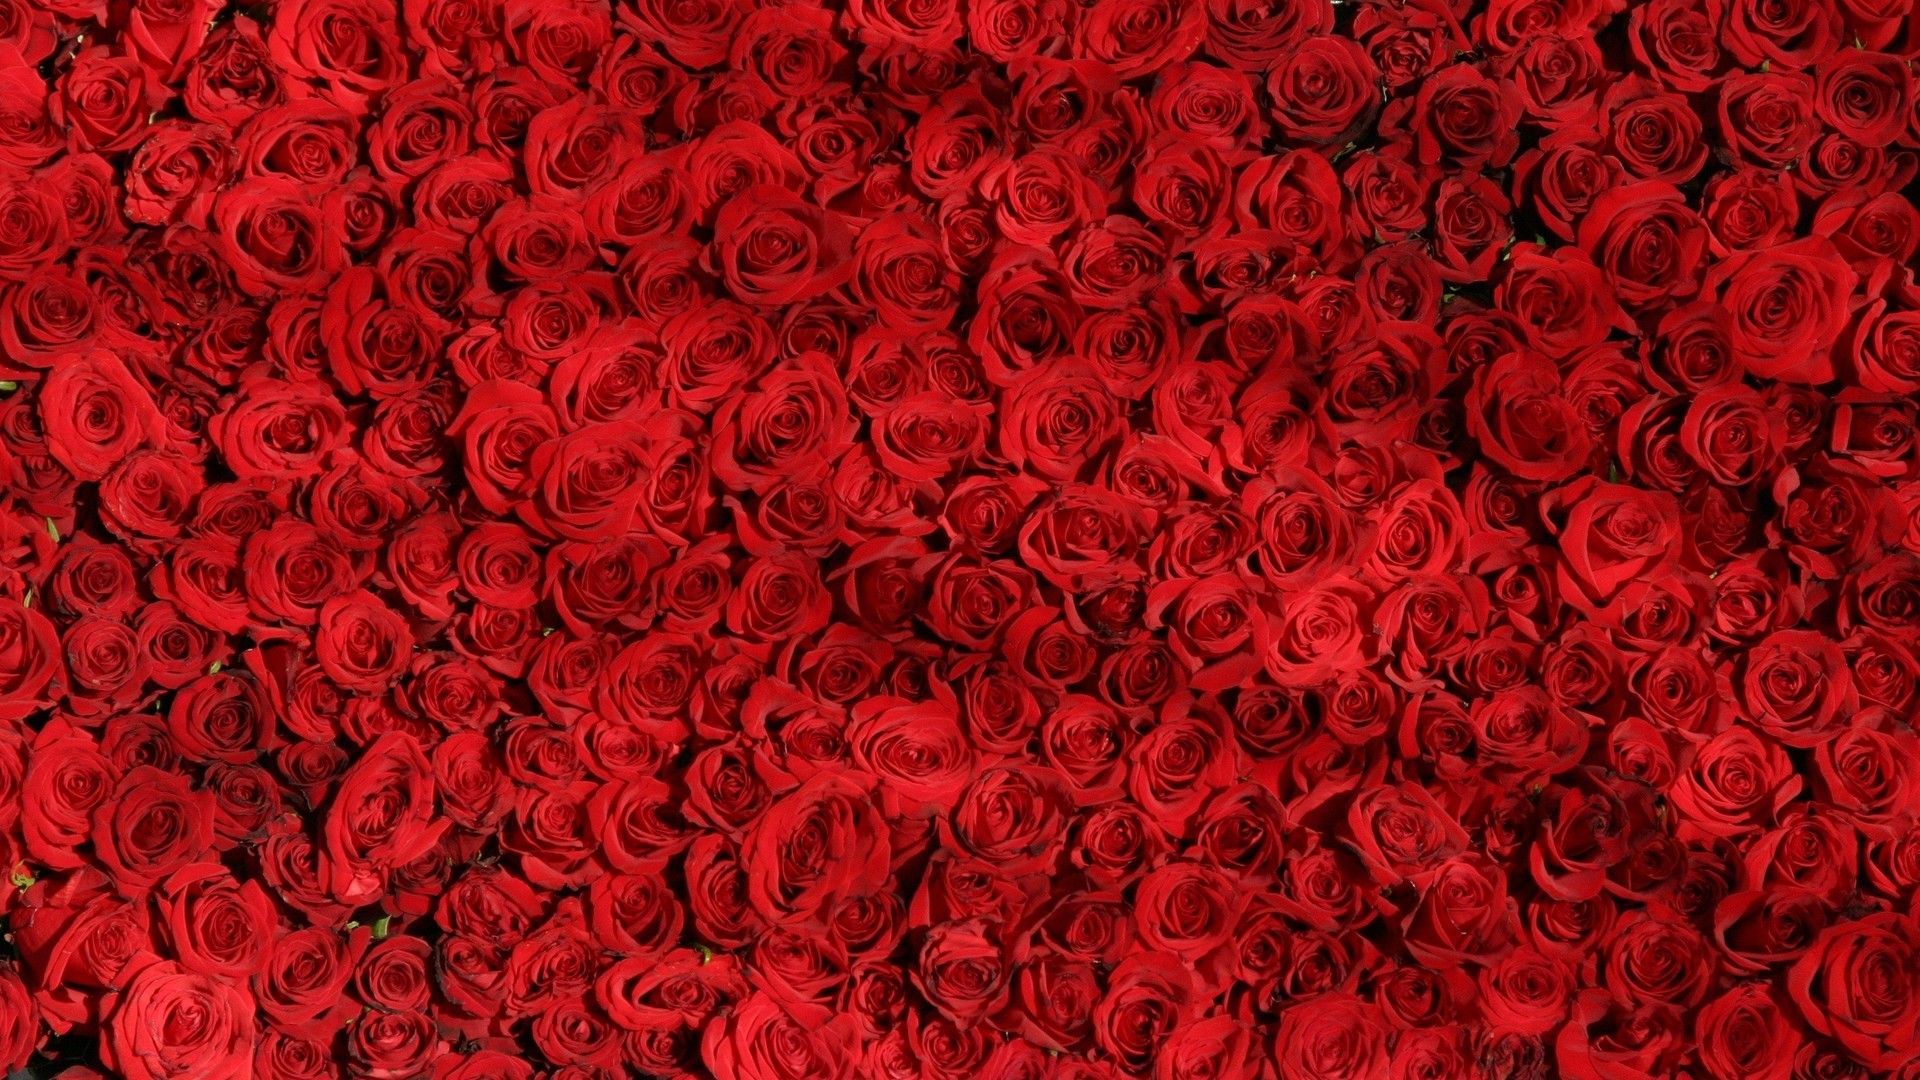 色彩鲜艳花朵与美食红色系背景简约素材大图